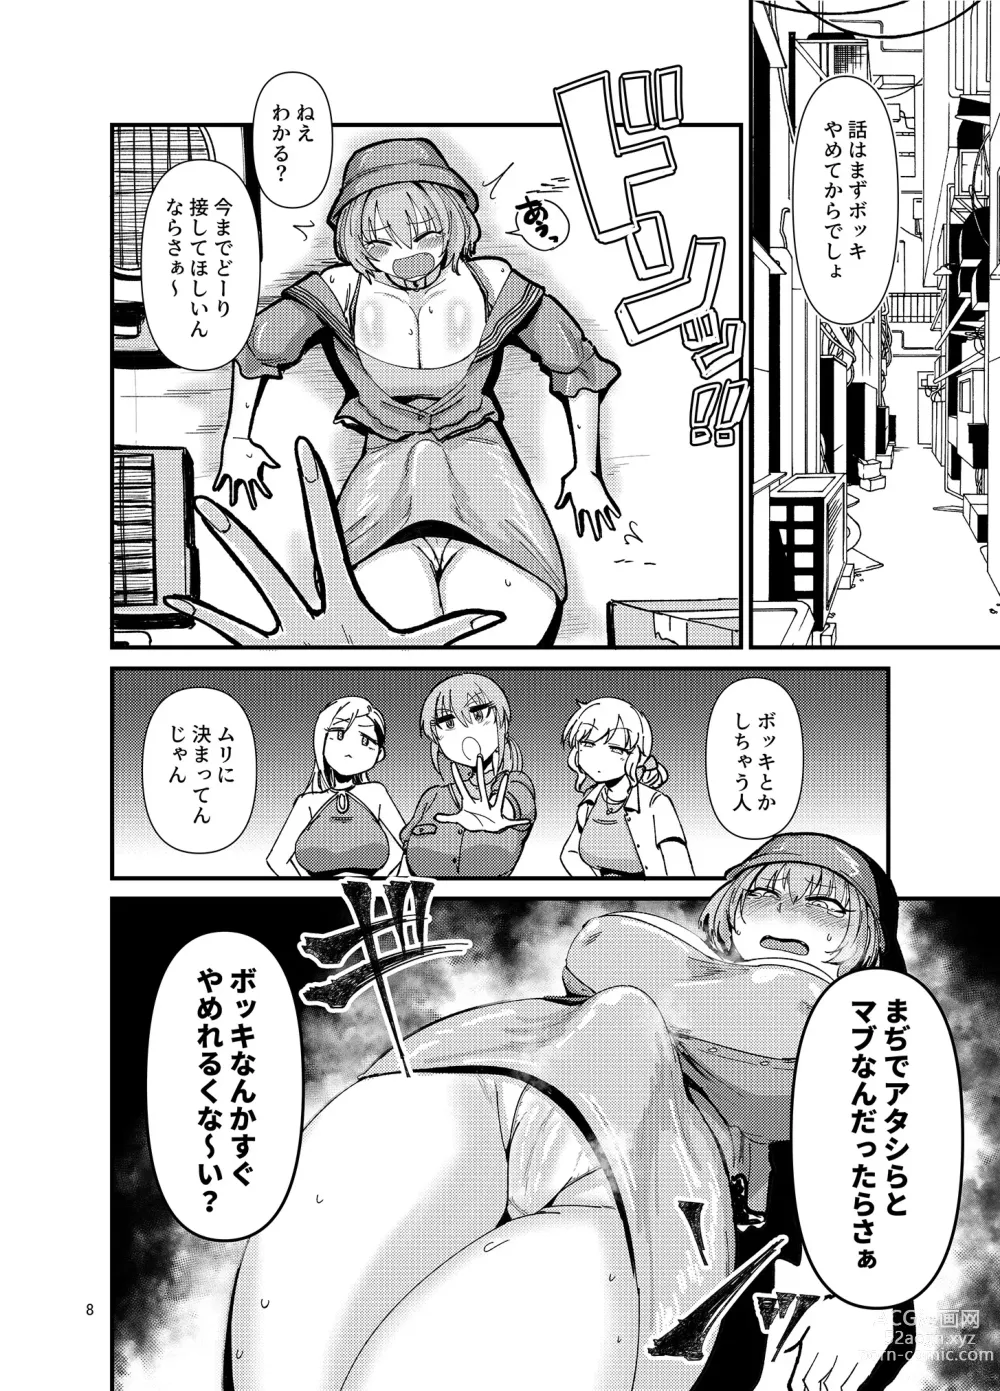 Page 8 of doujinshi Gal shika Tatan!